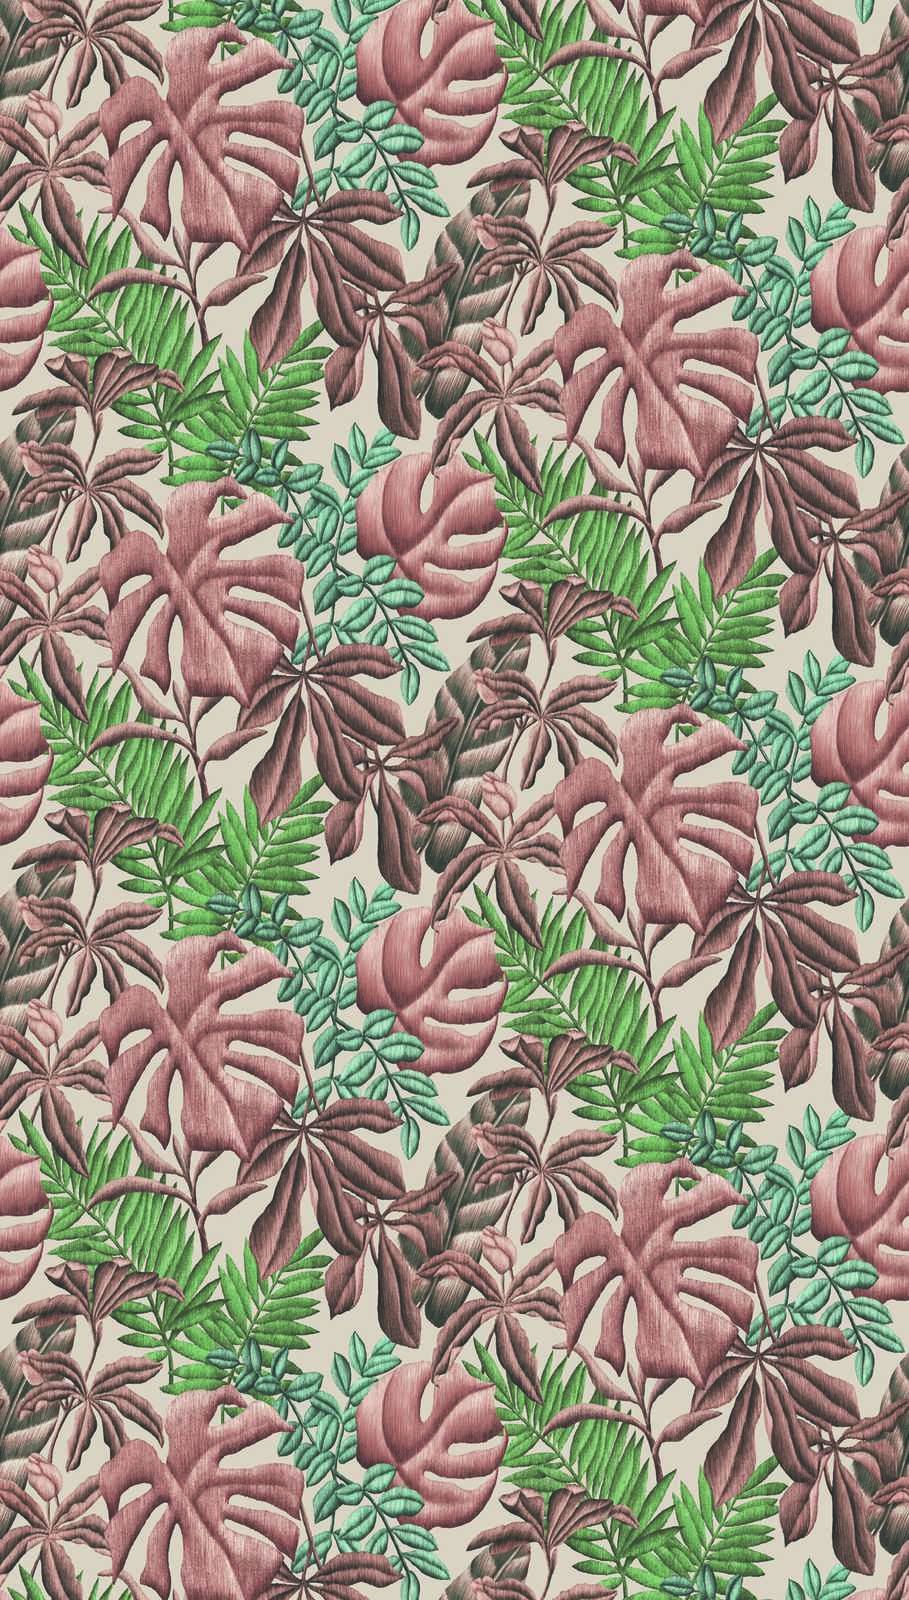             Bladpatroon vliesbehang met bananenbladeren & varen - roze, groen, crème
        